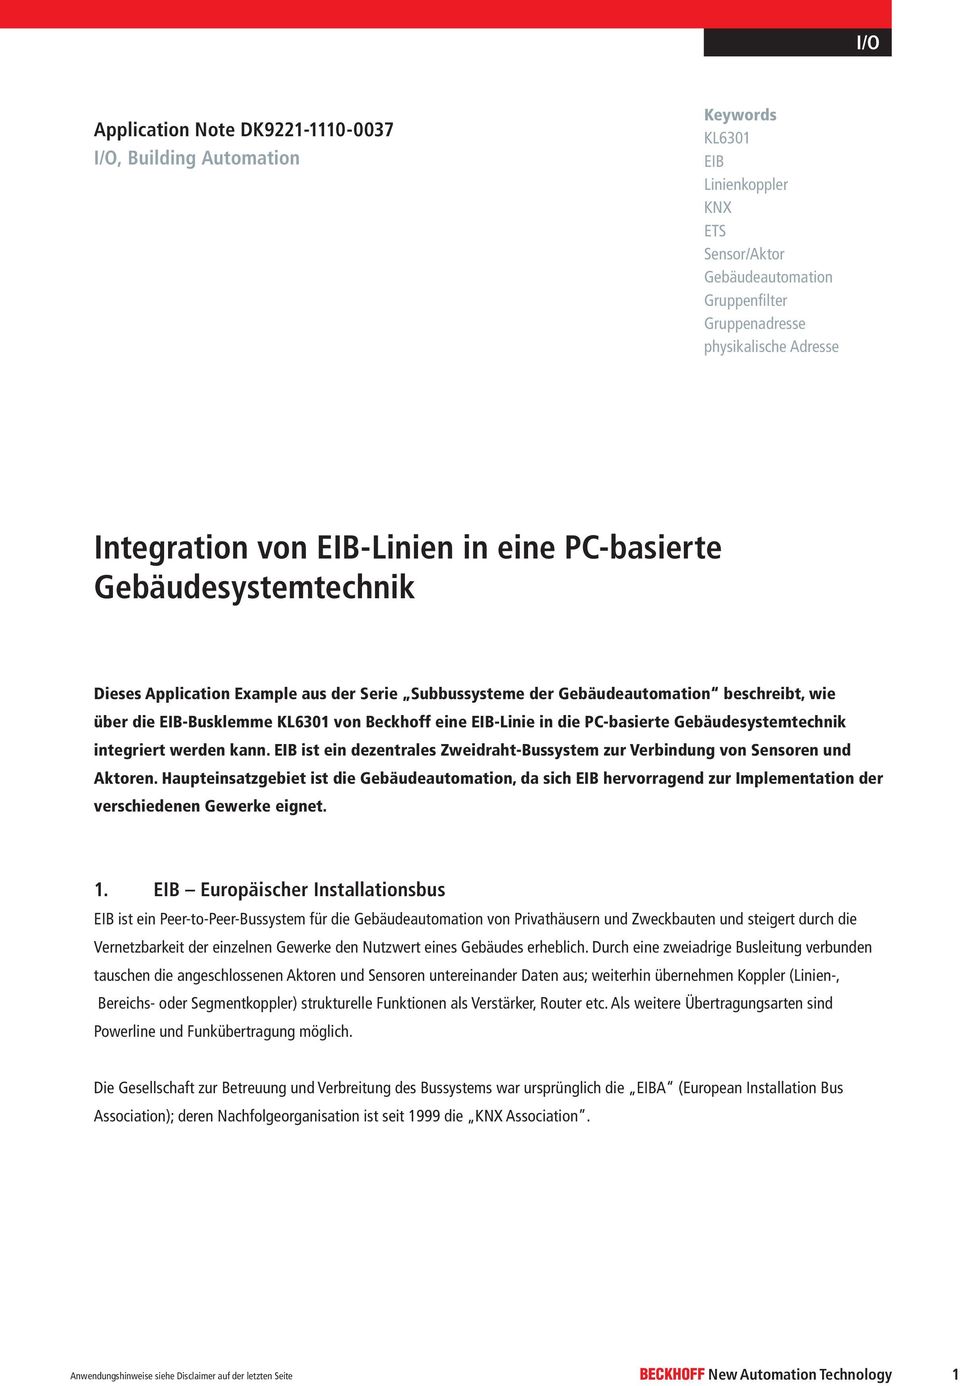 EIB ist ein dezentrales Zweidraht-Bussystem zur Verbindung von Sensoren und Aktoren.